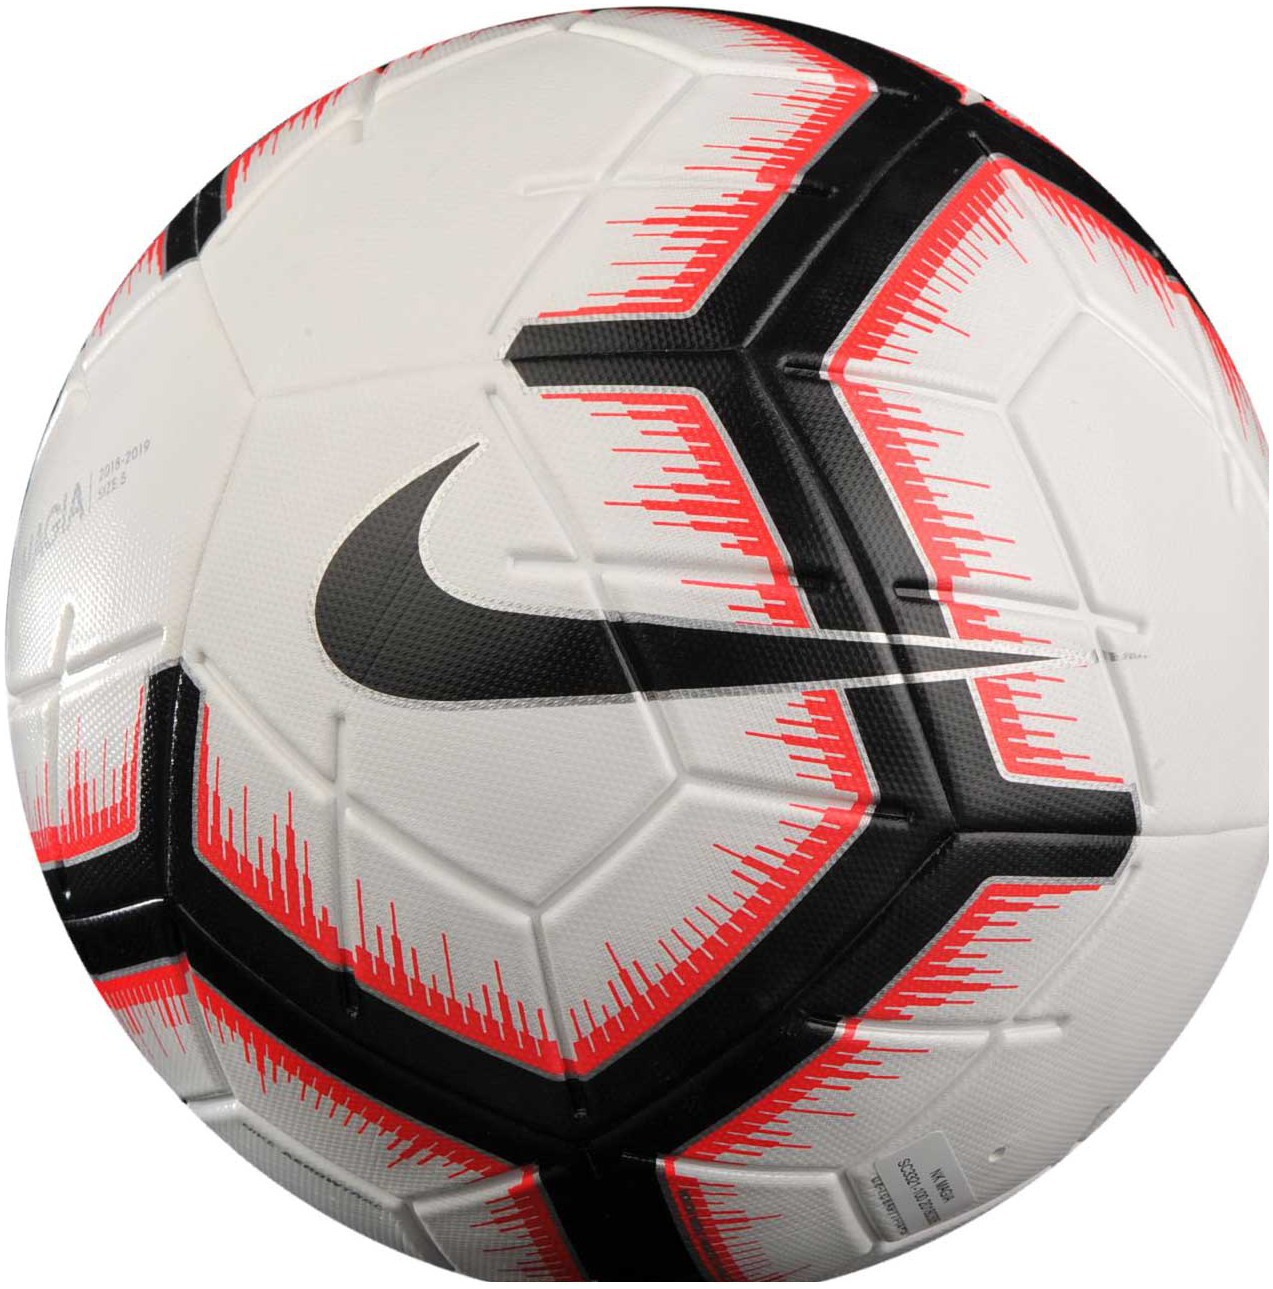 Футбольный мяч fifa. Мяч найк magia. Мяч Nike FIFA. Мяч футбольный мяч Nike magia III FIFA sc3622. Футбольный мяч найк FIFA quality Pro.